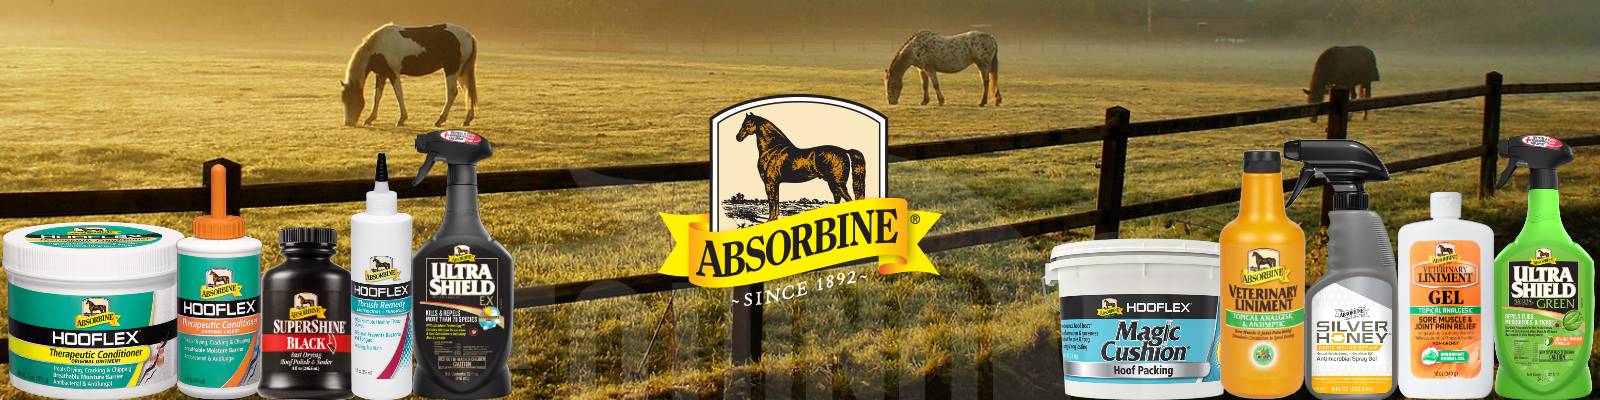 productos para caballo absorbine